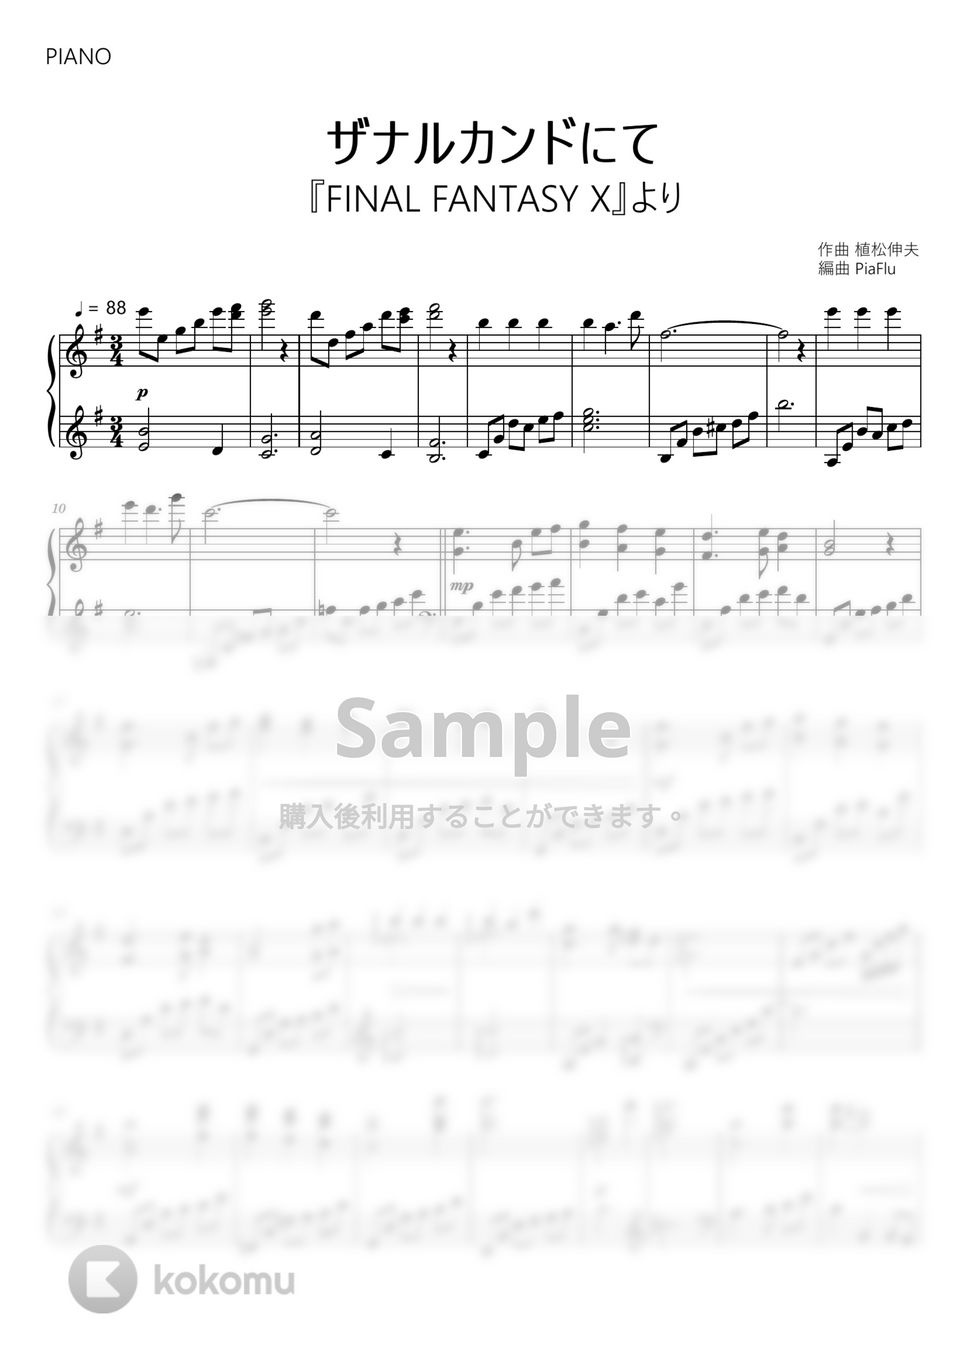 ファイナルファンタジーX - ザナルカンドにて (ピアノ) by PiaFlu